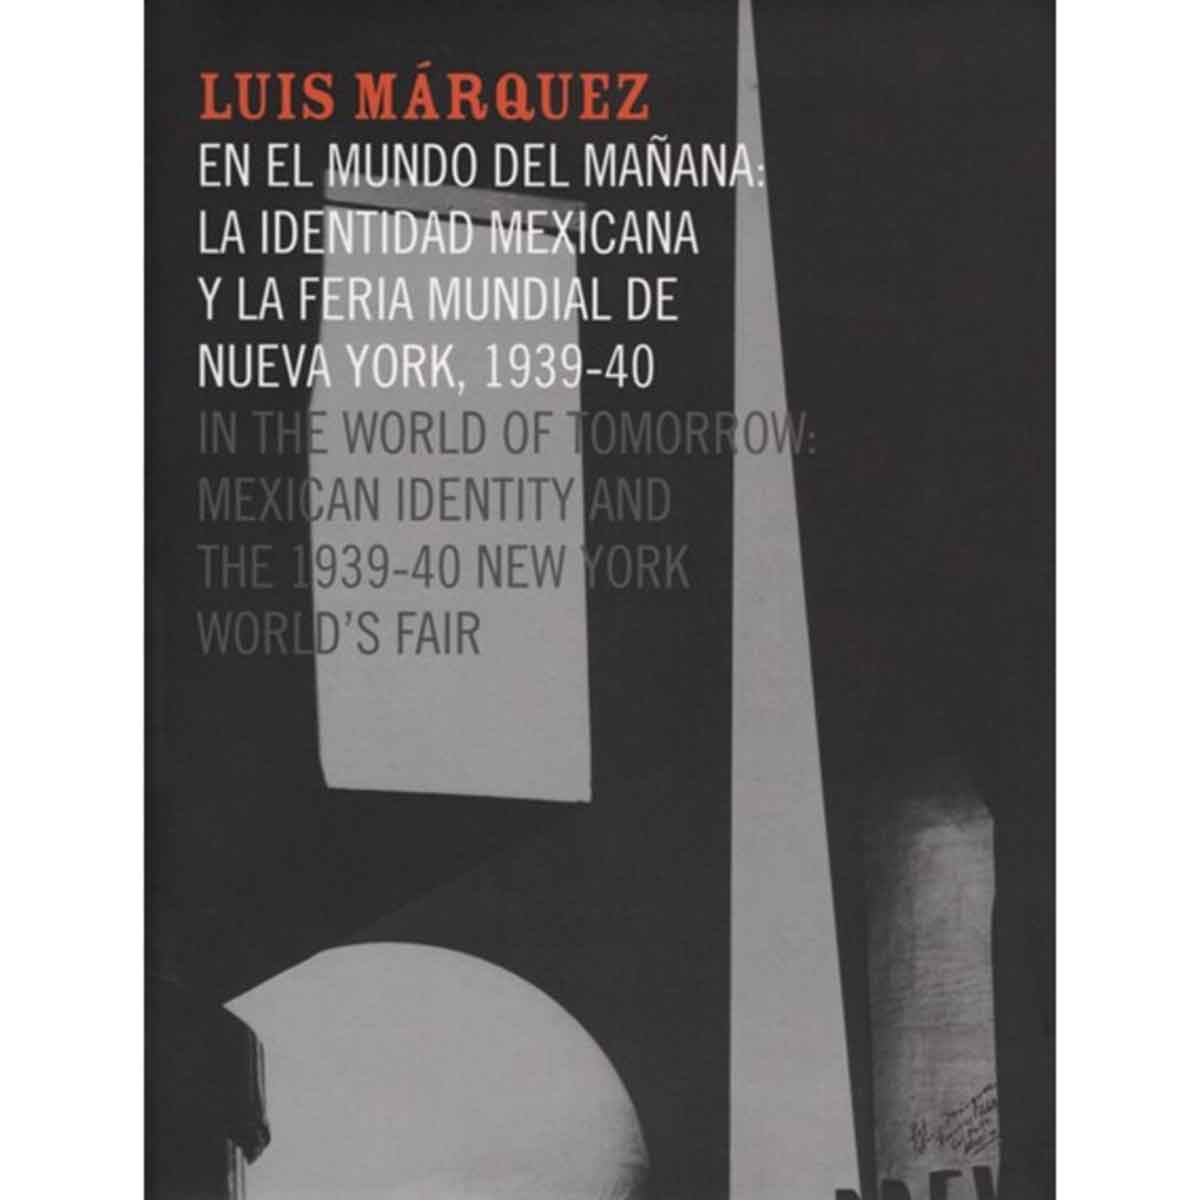 LUIS MÁRQUEZ EN EL MUNDO DEL MAÑANA. LA IDENTIDAD MEXICANA Y LA FERIA MUNDIAL DE NUEVA YORK, 1939-40